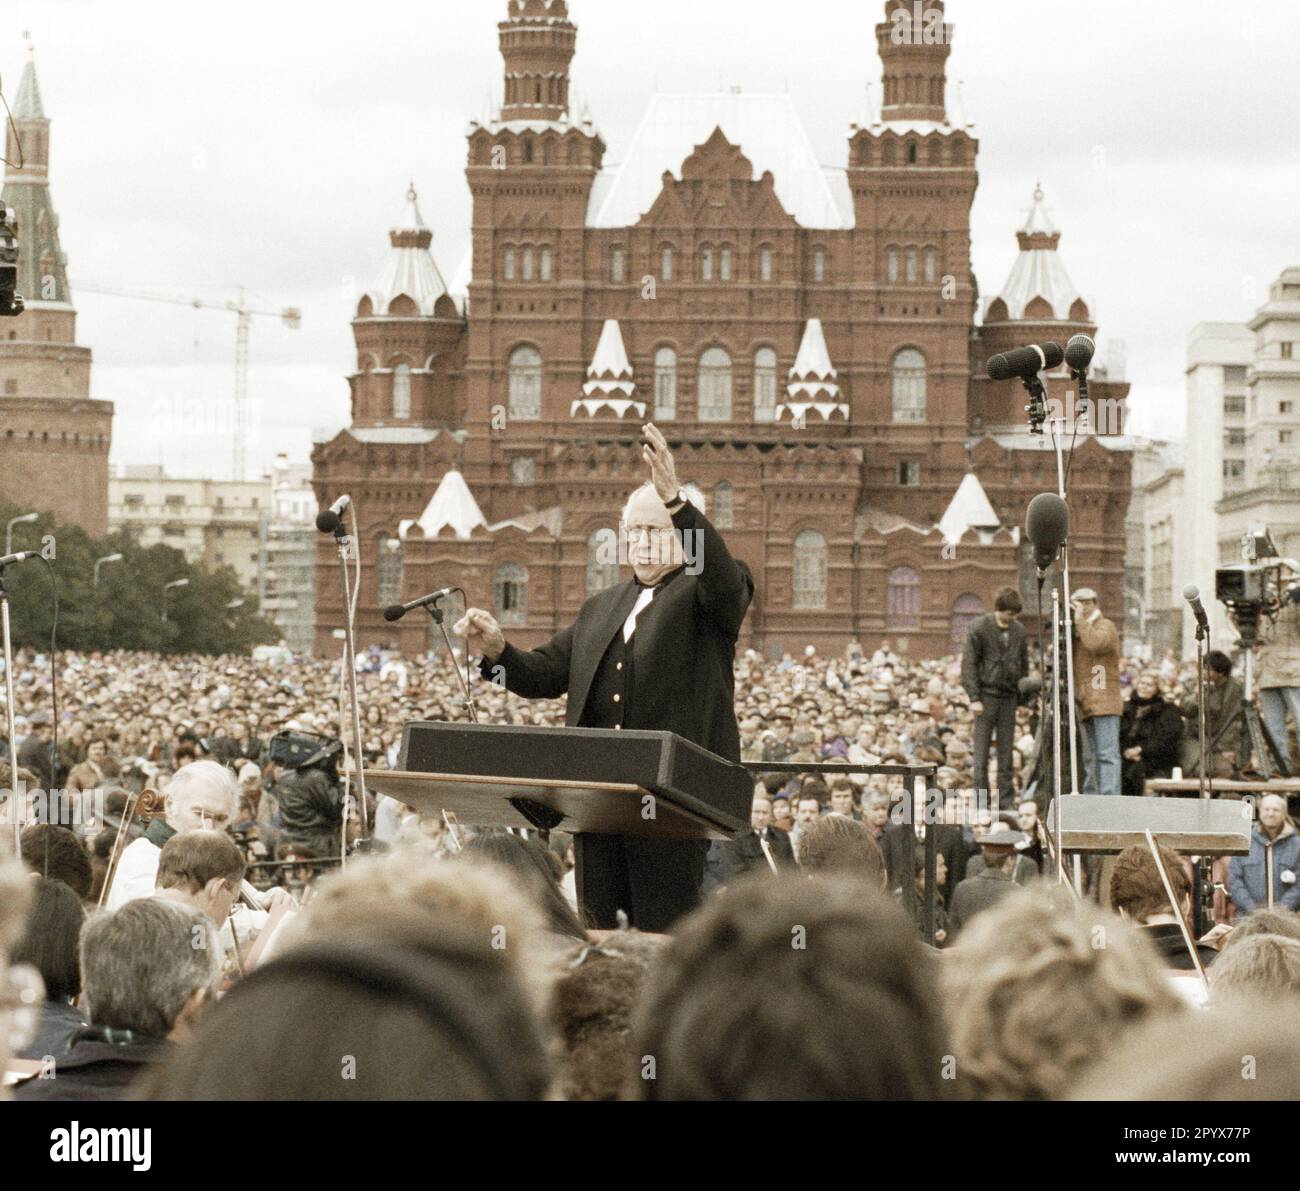 Mstislav Rostropowitsch führt das erste Orchesterkonzert auf dem Roten Platz in Moskau durch. Farbfotografie Stockfoto